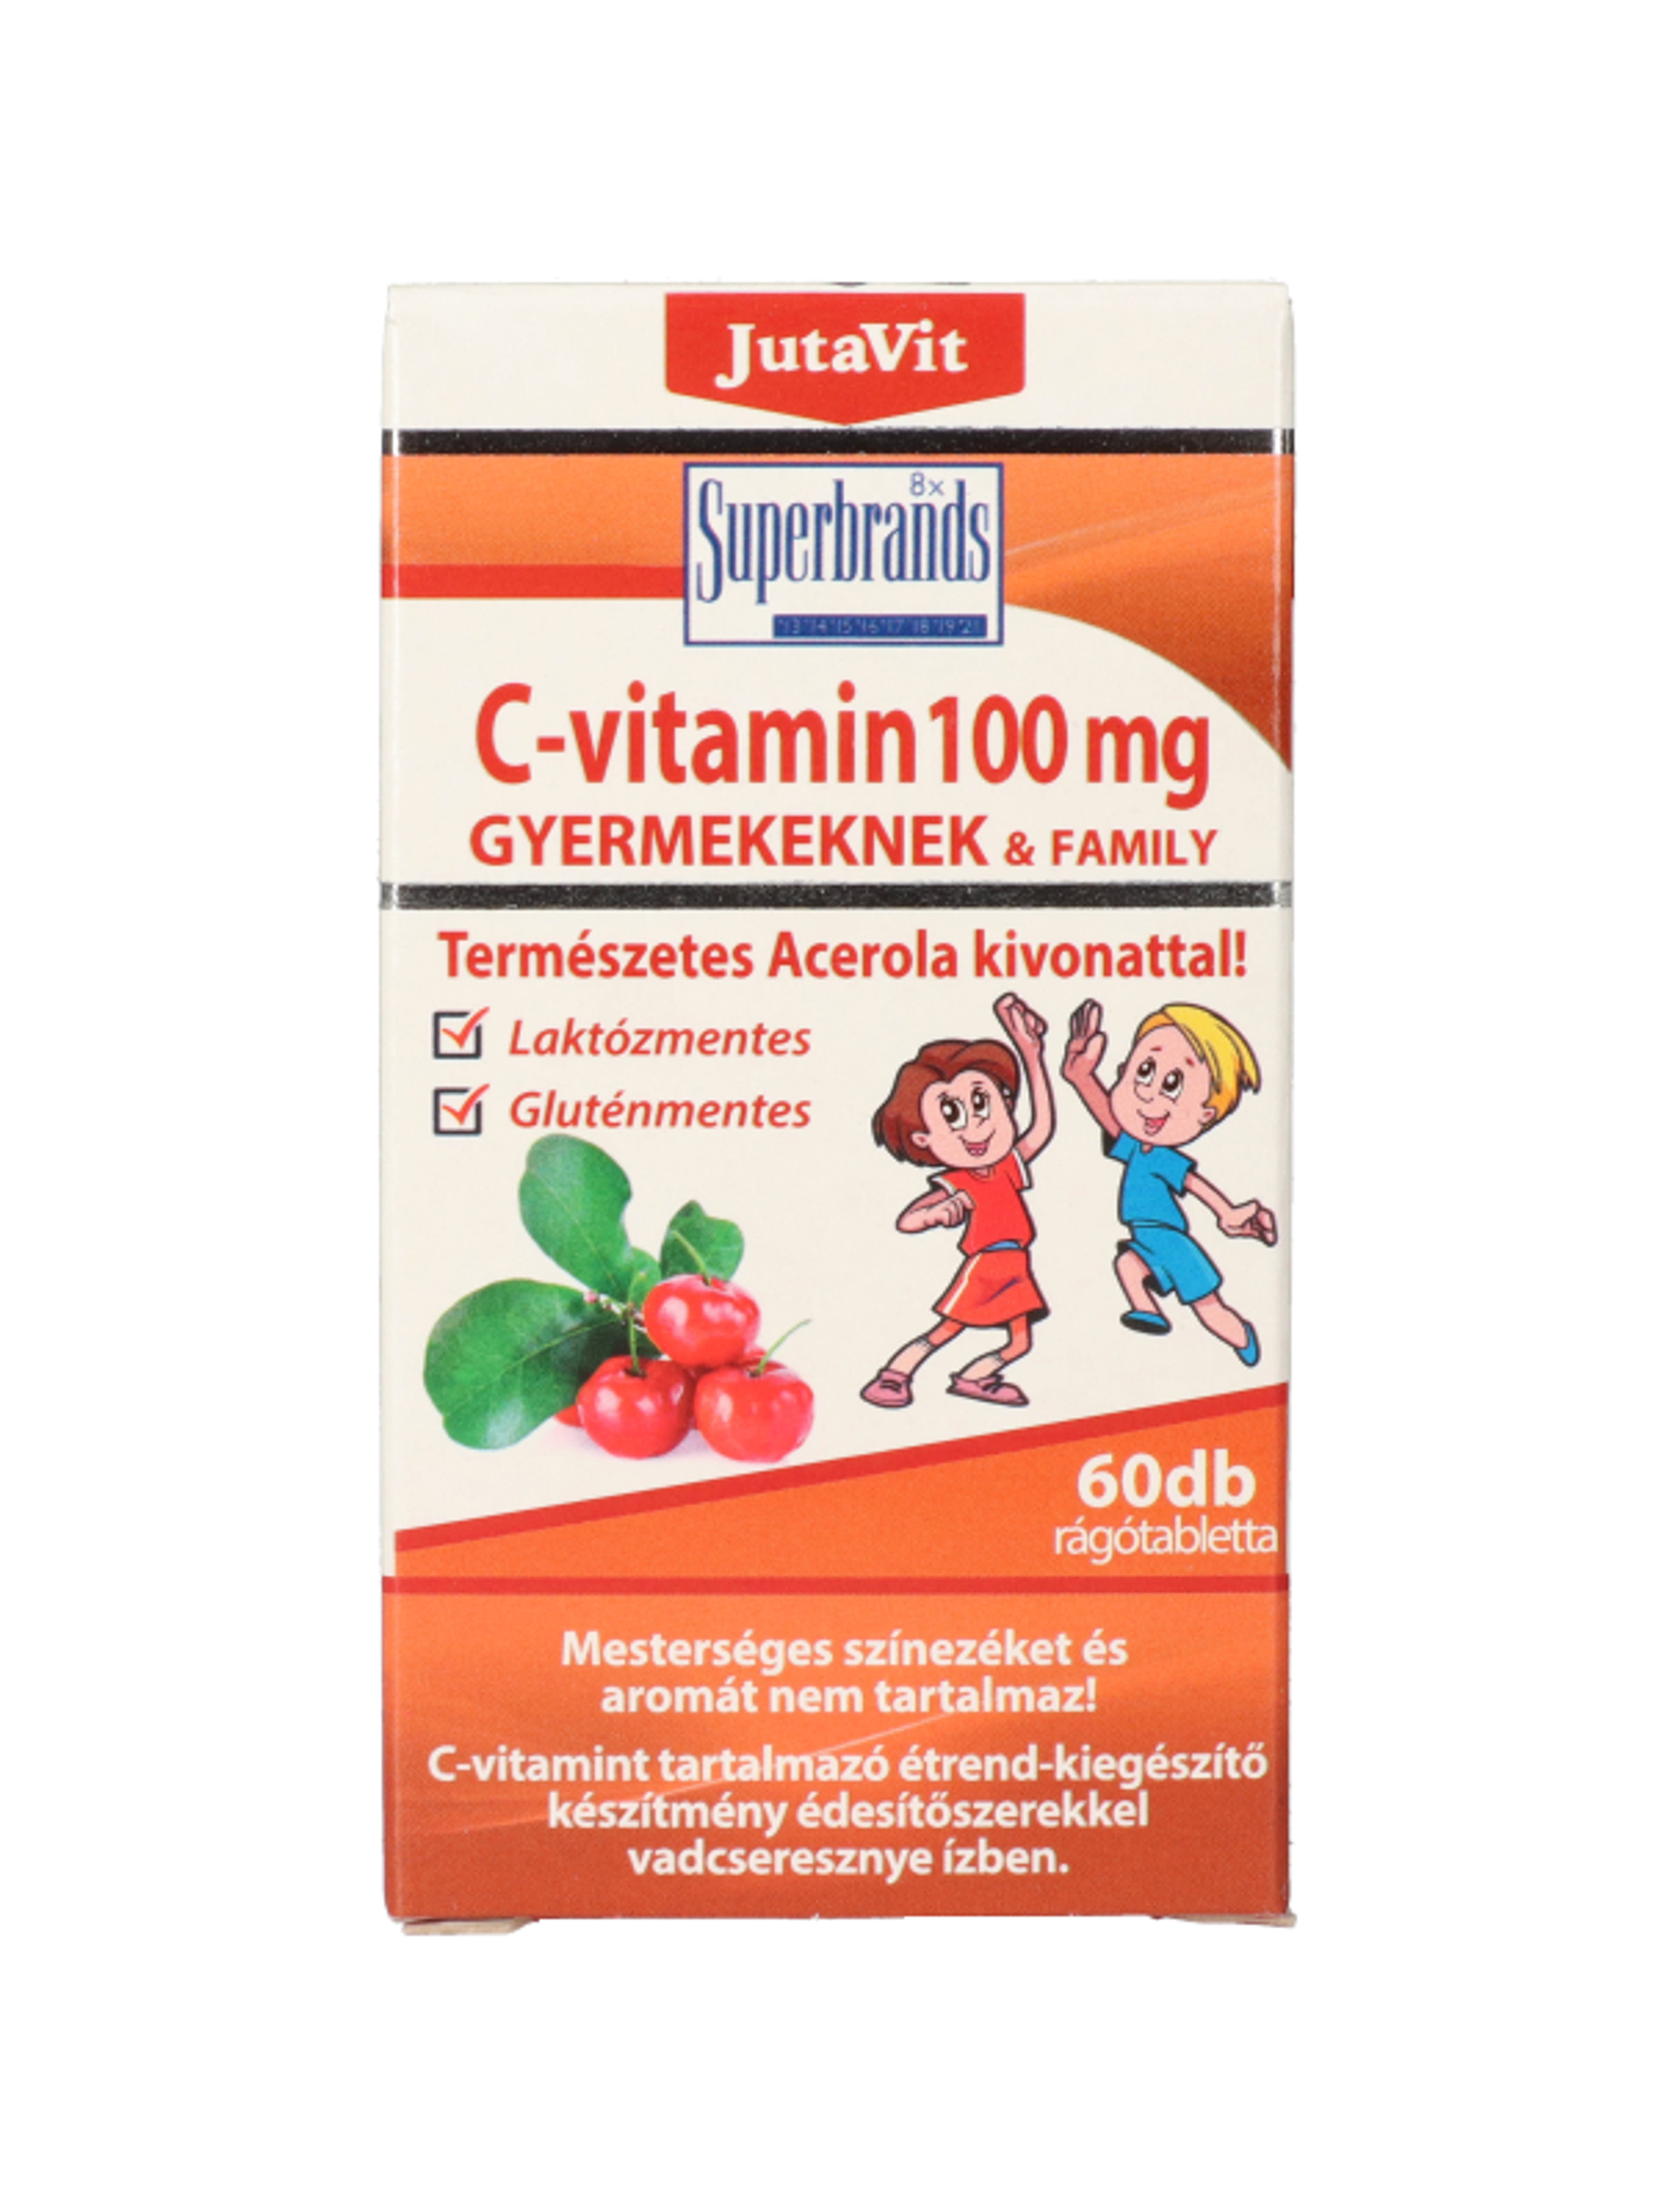 JutaVit C-vitamin gyermekeknek étrend-kiegészítő rágótabletta, vadcseresznye ízű - 60 db